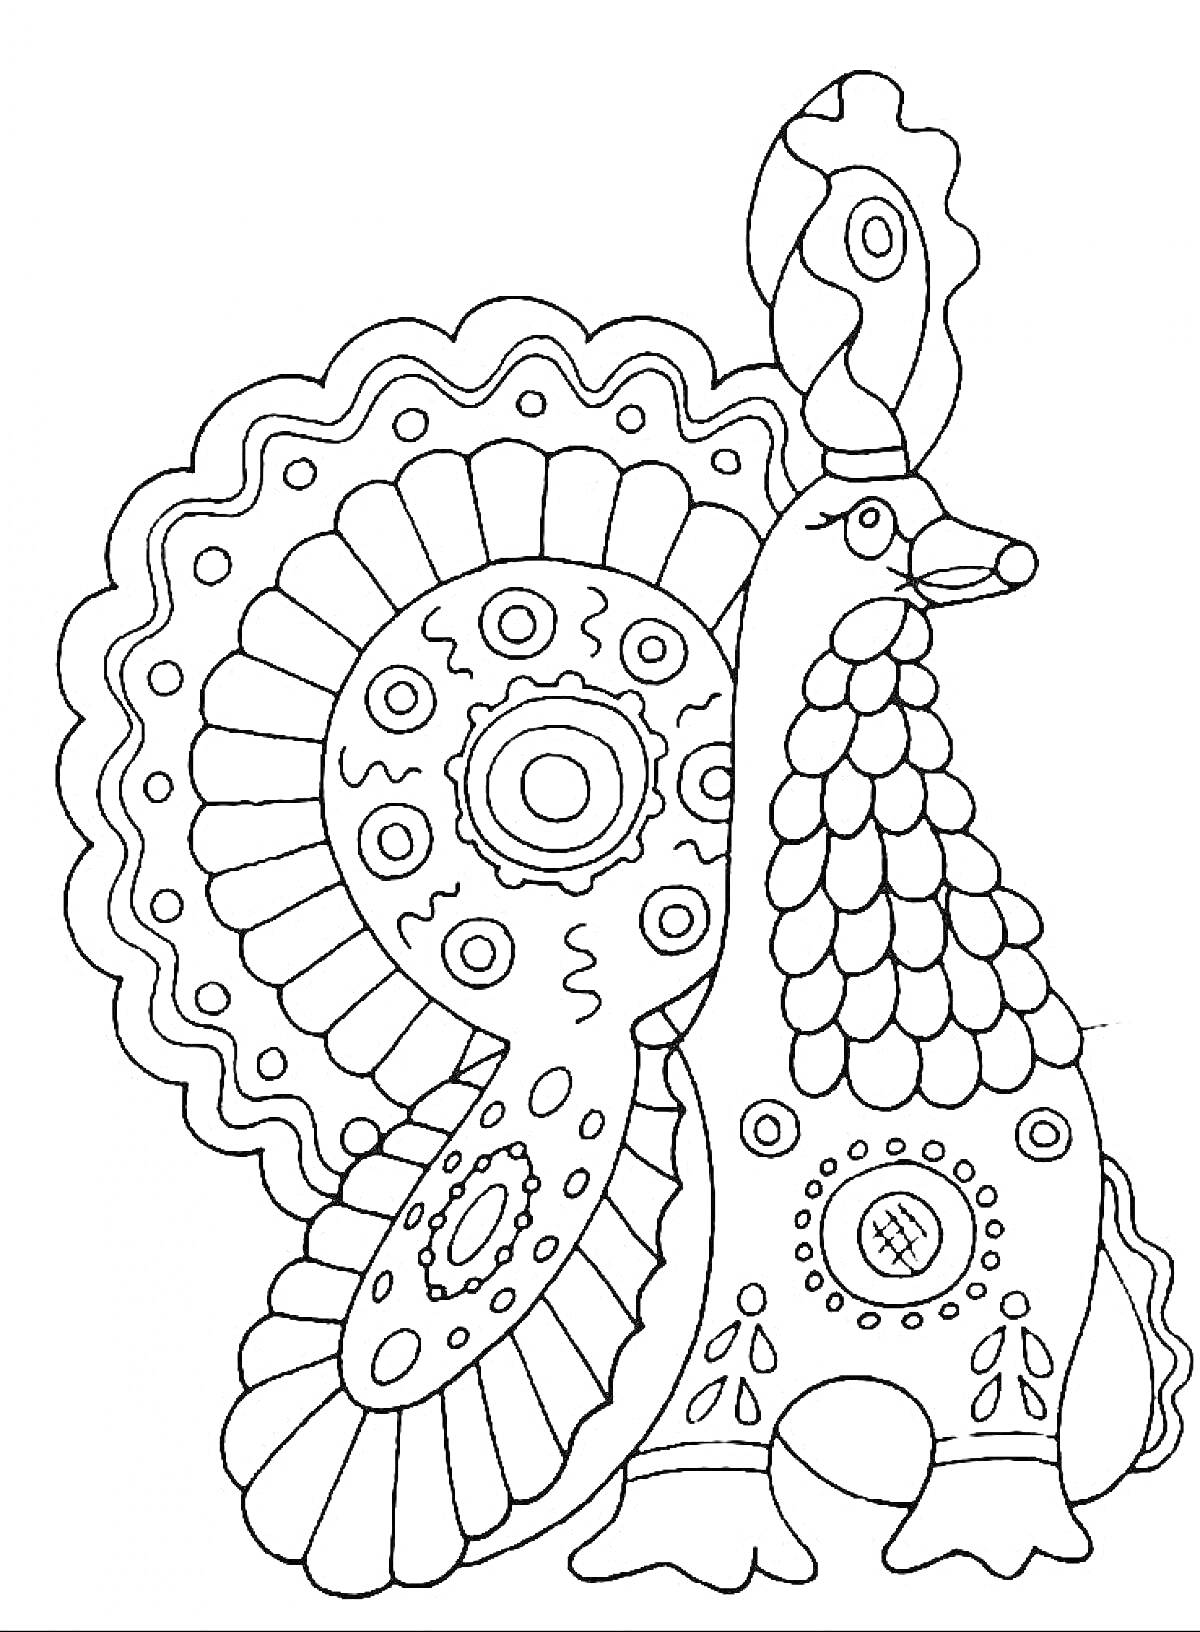 Раскраска Дымковская игрушка - петух с узором из кругов и полосок, с гребешком и хвостом